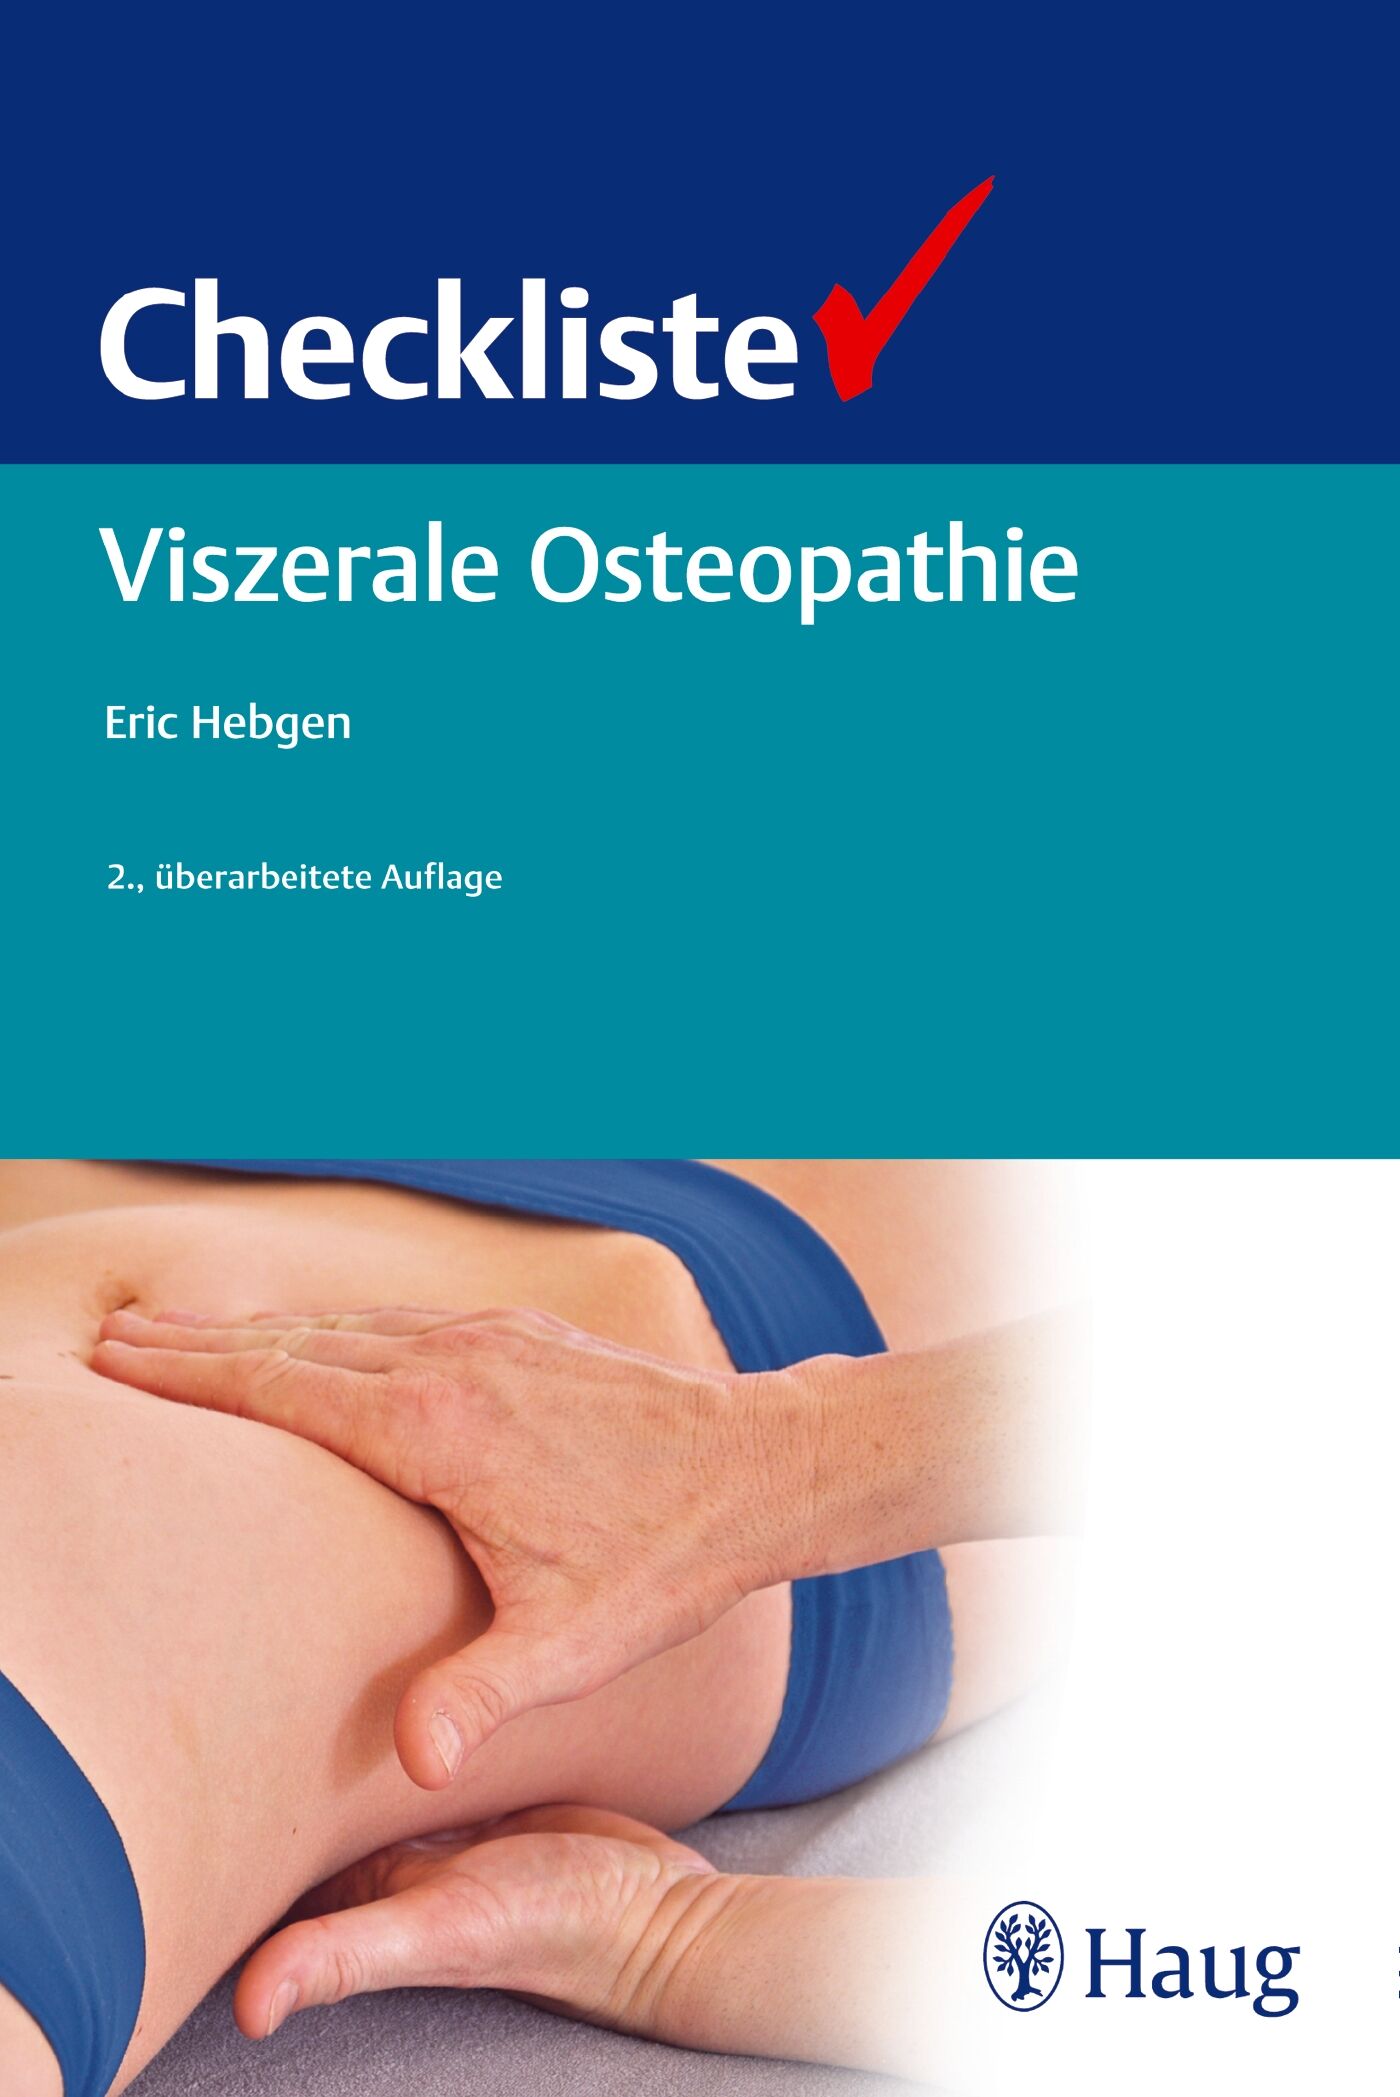 Checkliste Viszerale Osteopathie, 9783830477556